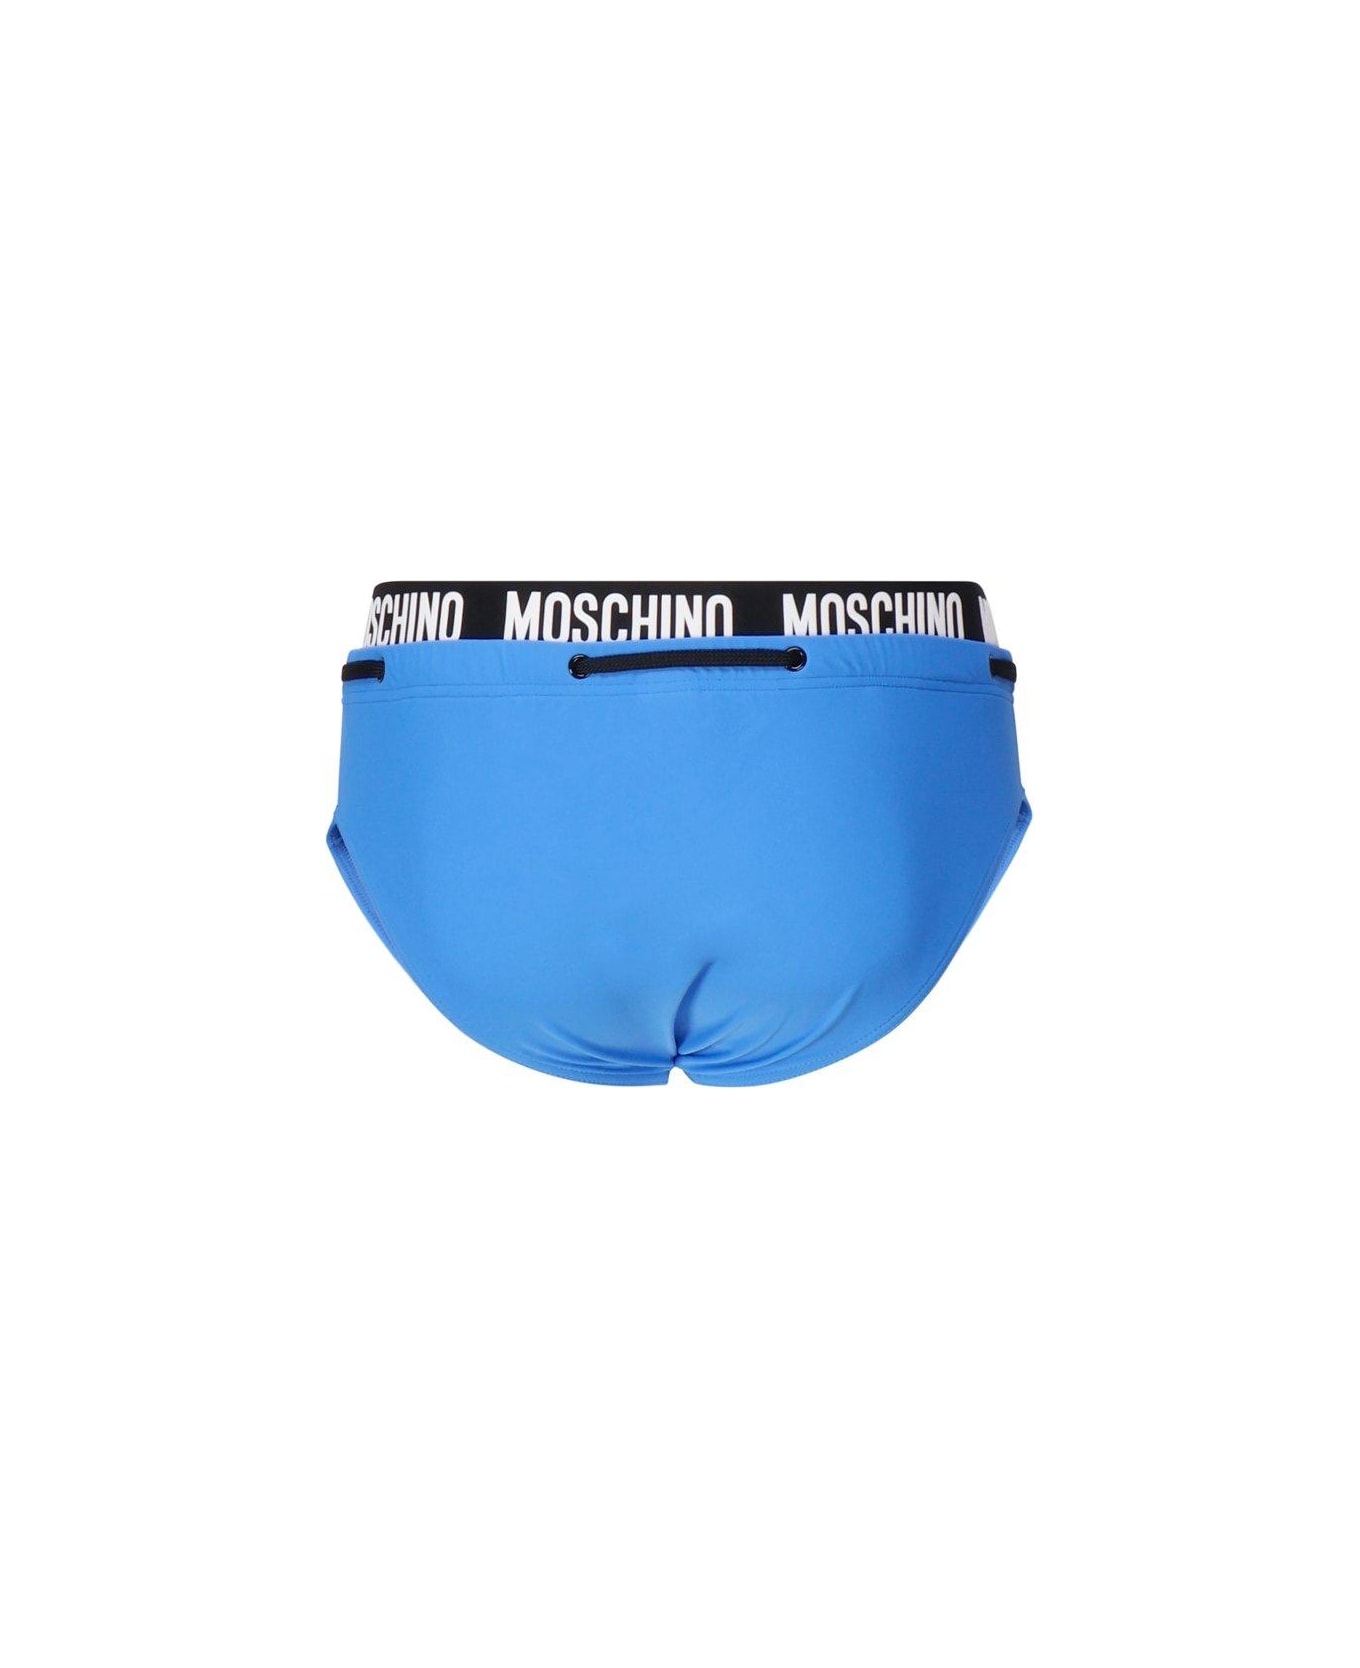 Moschino Logo Waistband Drawstring Swim Briefs - Blue, black